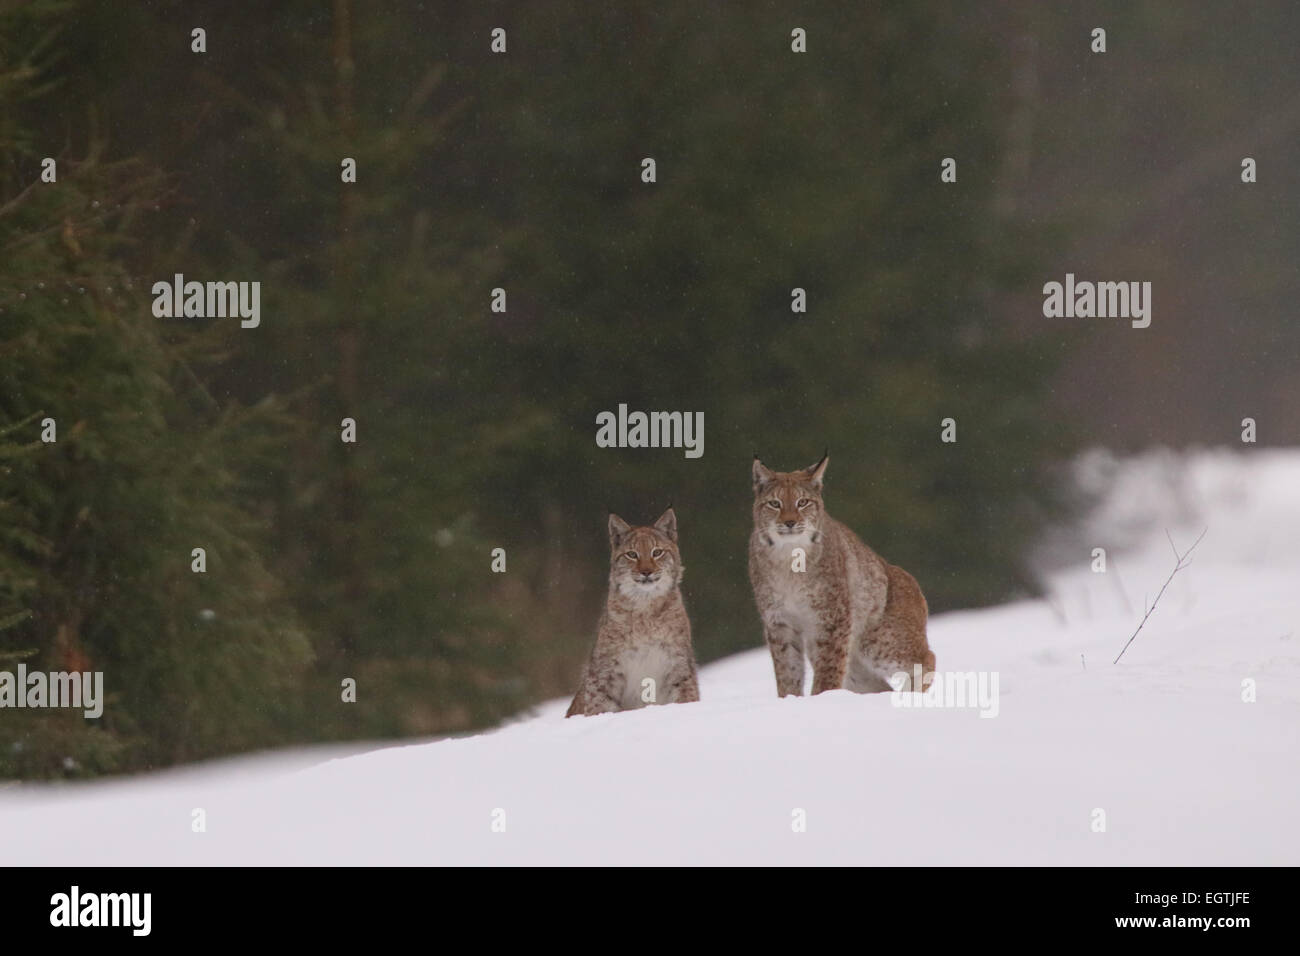 Sauvage et libre, couple de lynx insaisissable de l'Estonie, de l'Europe. Banque D'Images